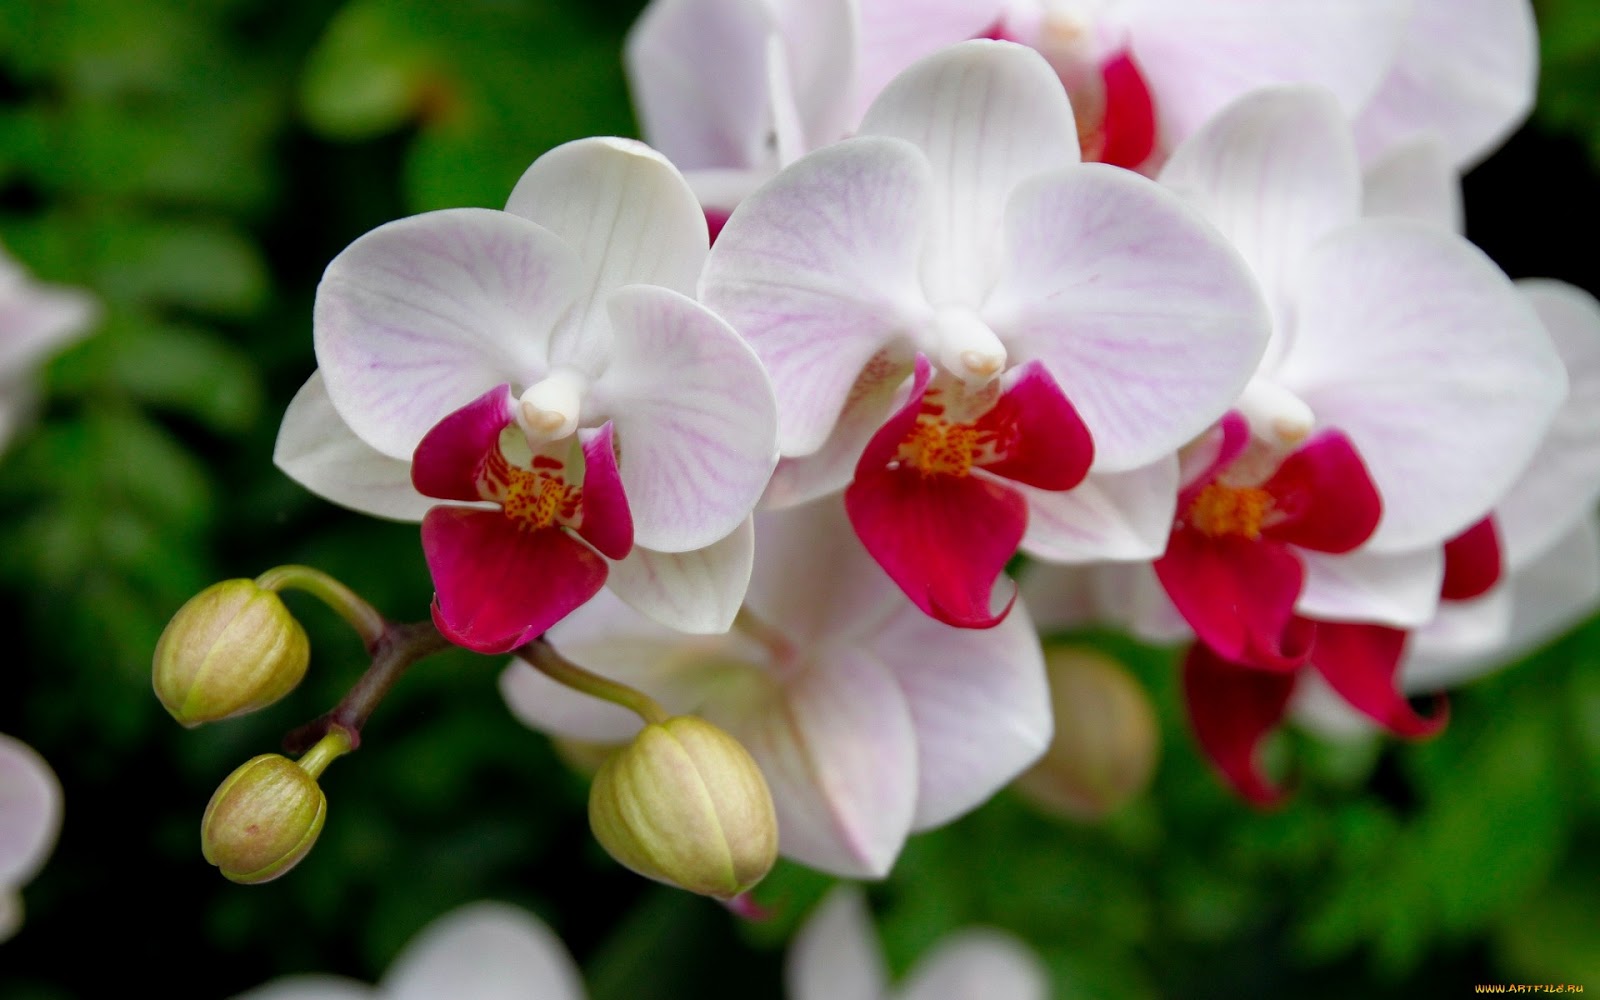 Tipos de orquídeas lindas, nomes e fotos | Decorando Casas